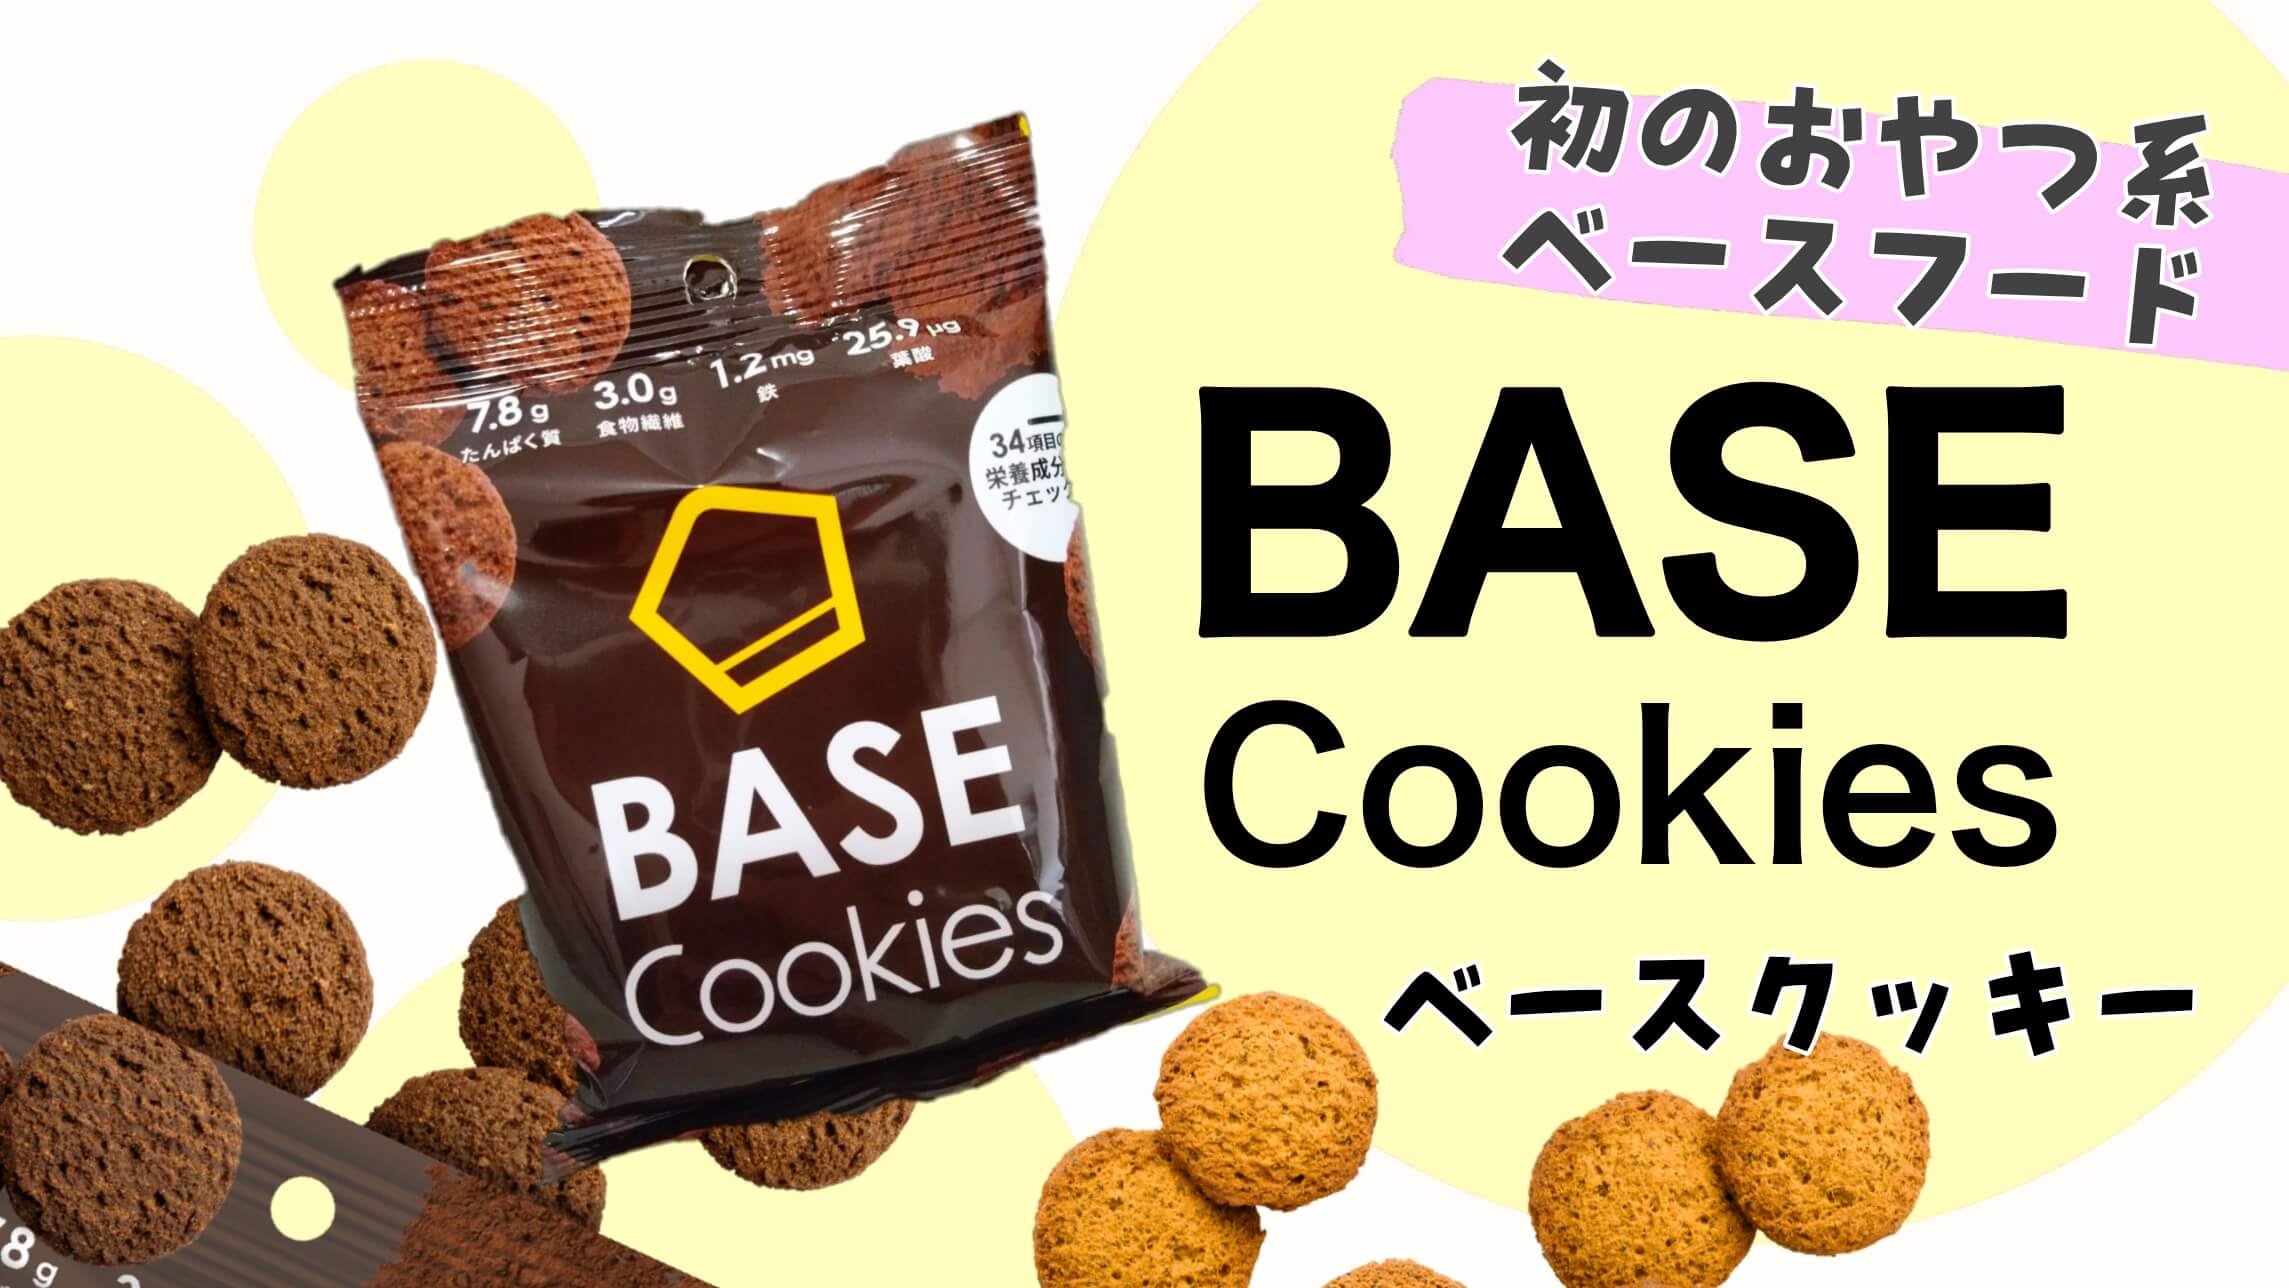 発売モデル BASE Cookies ベースクッキー ベース 80袋